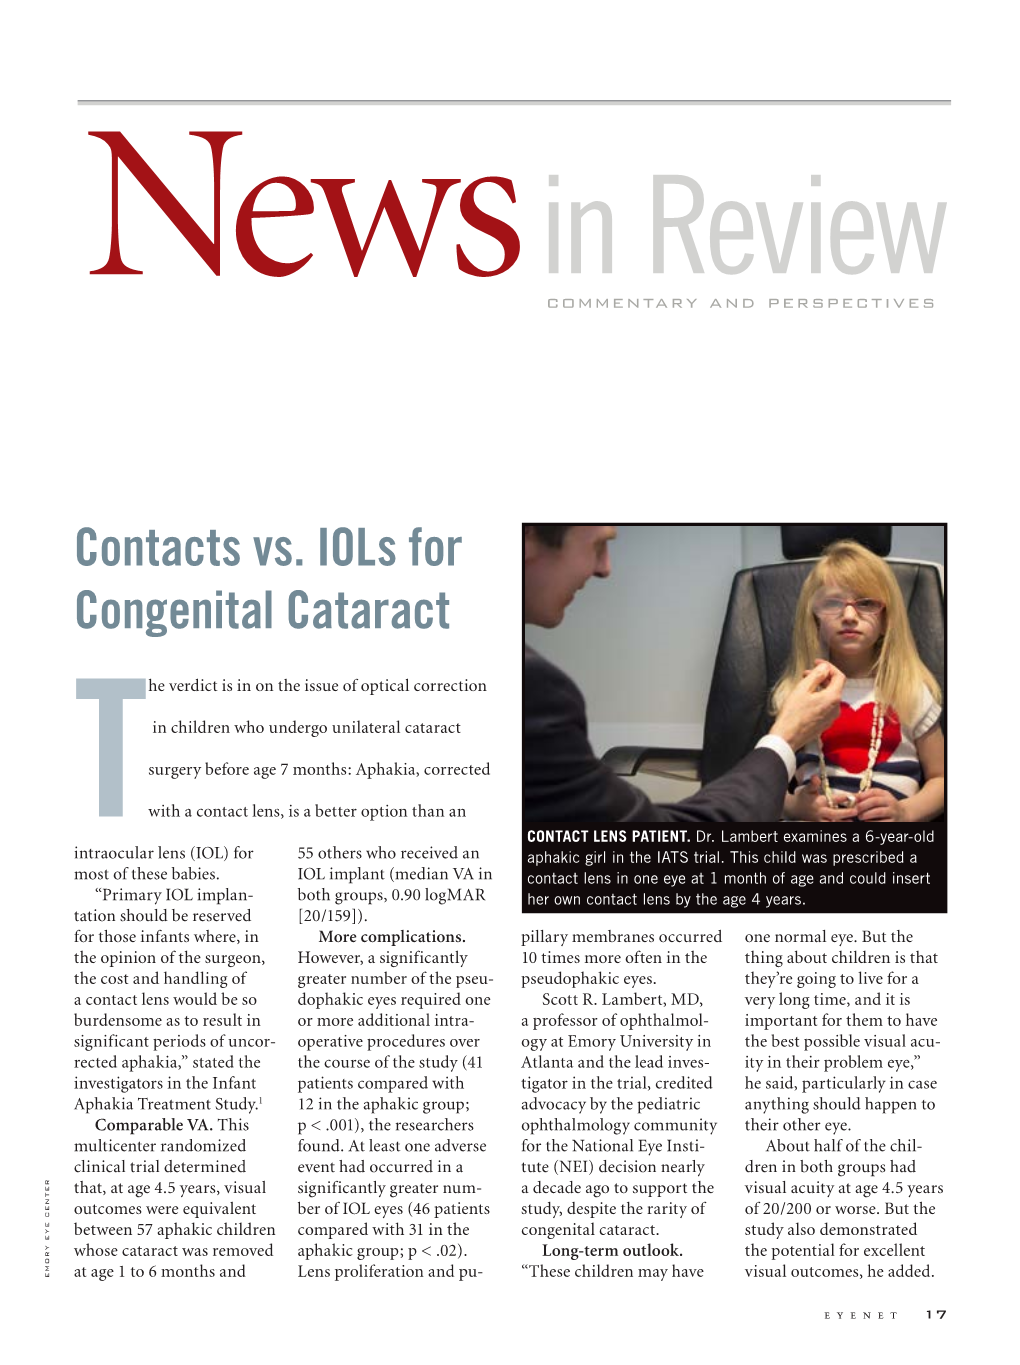 Contacts Vs. Iols for Congenital Cataract